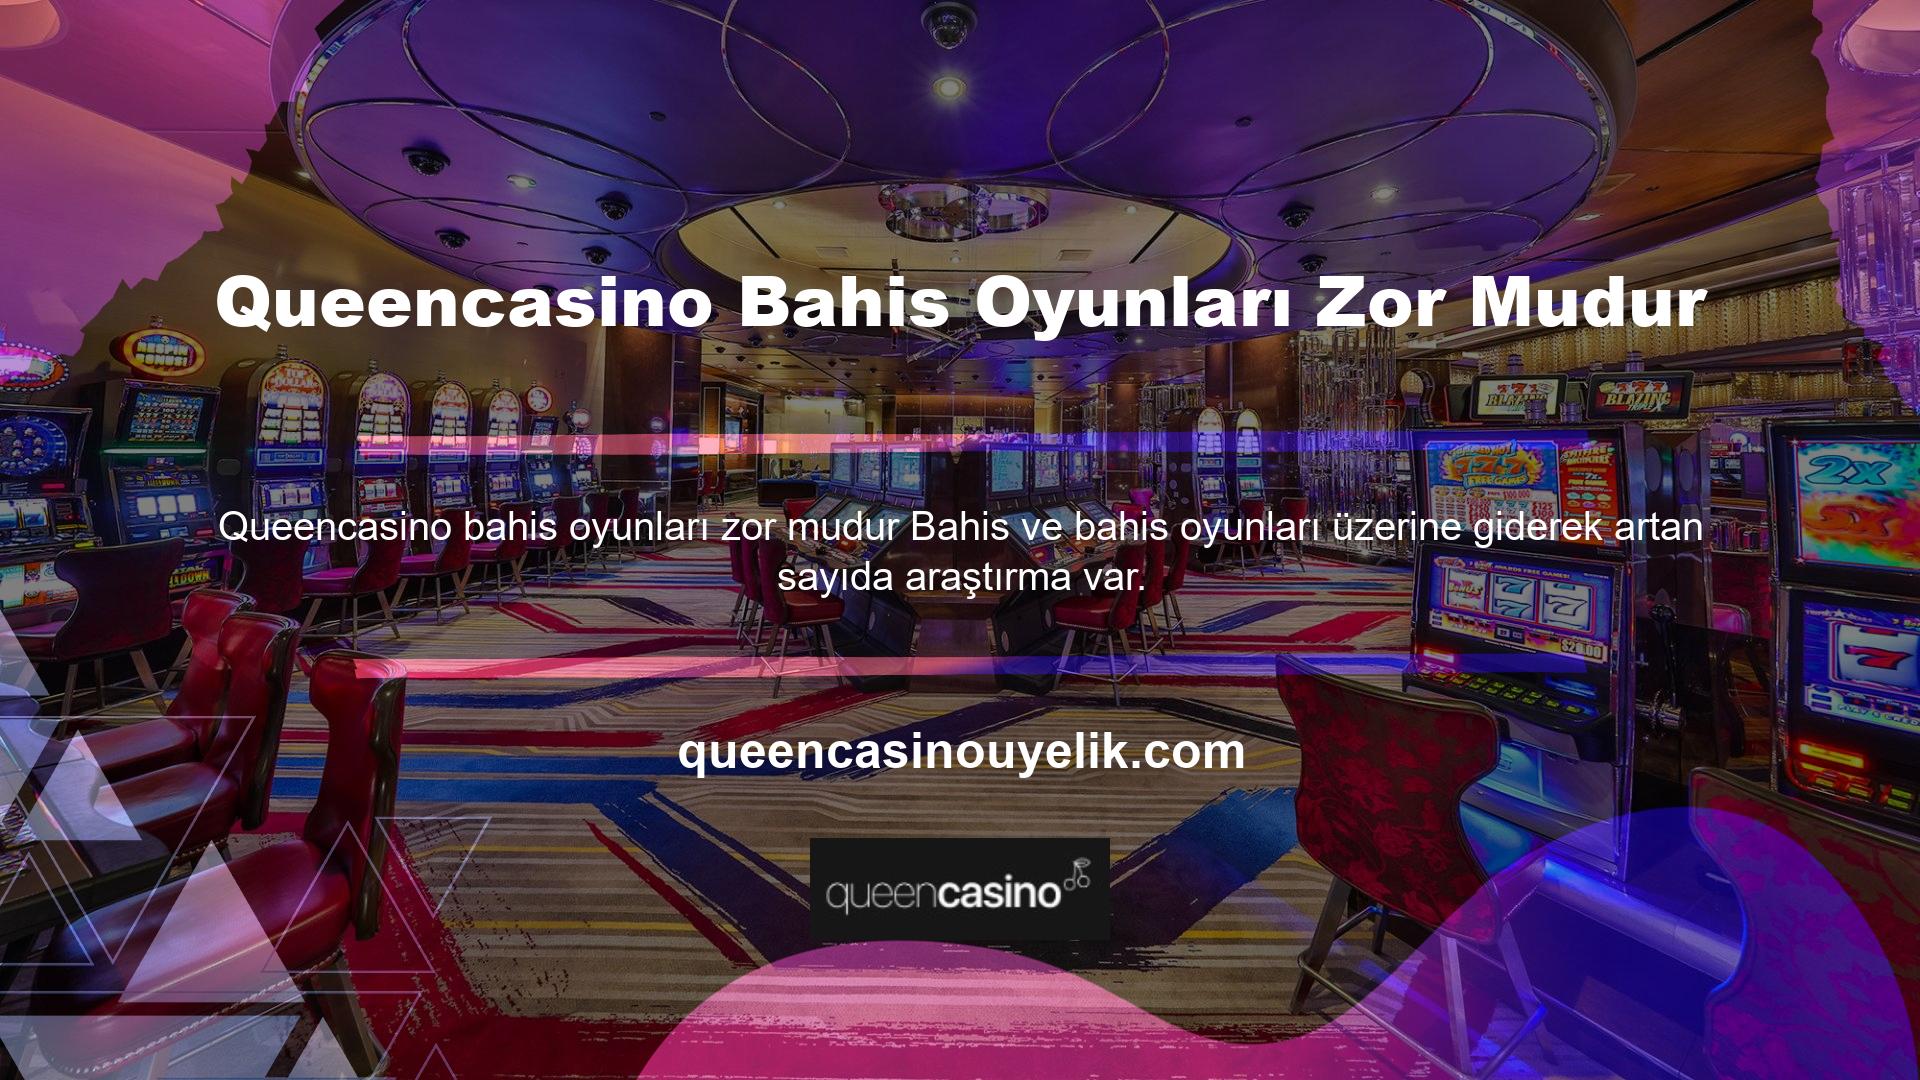 İşte nedeni: Queencasino web sitesinin popülaritesi artıyor